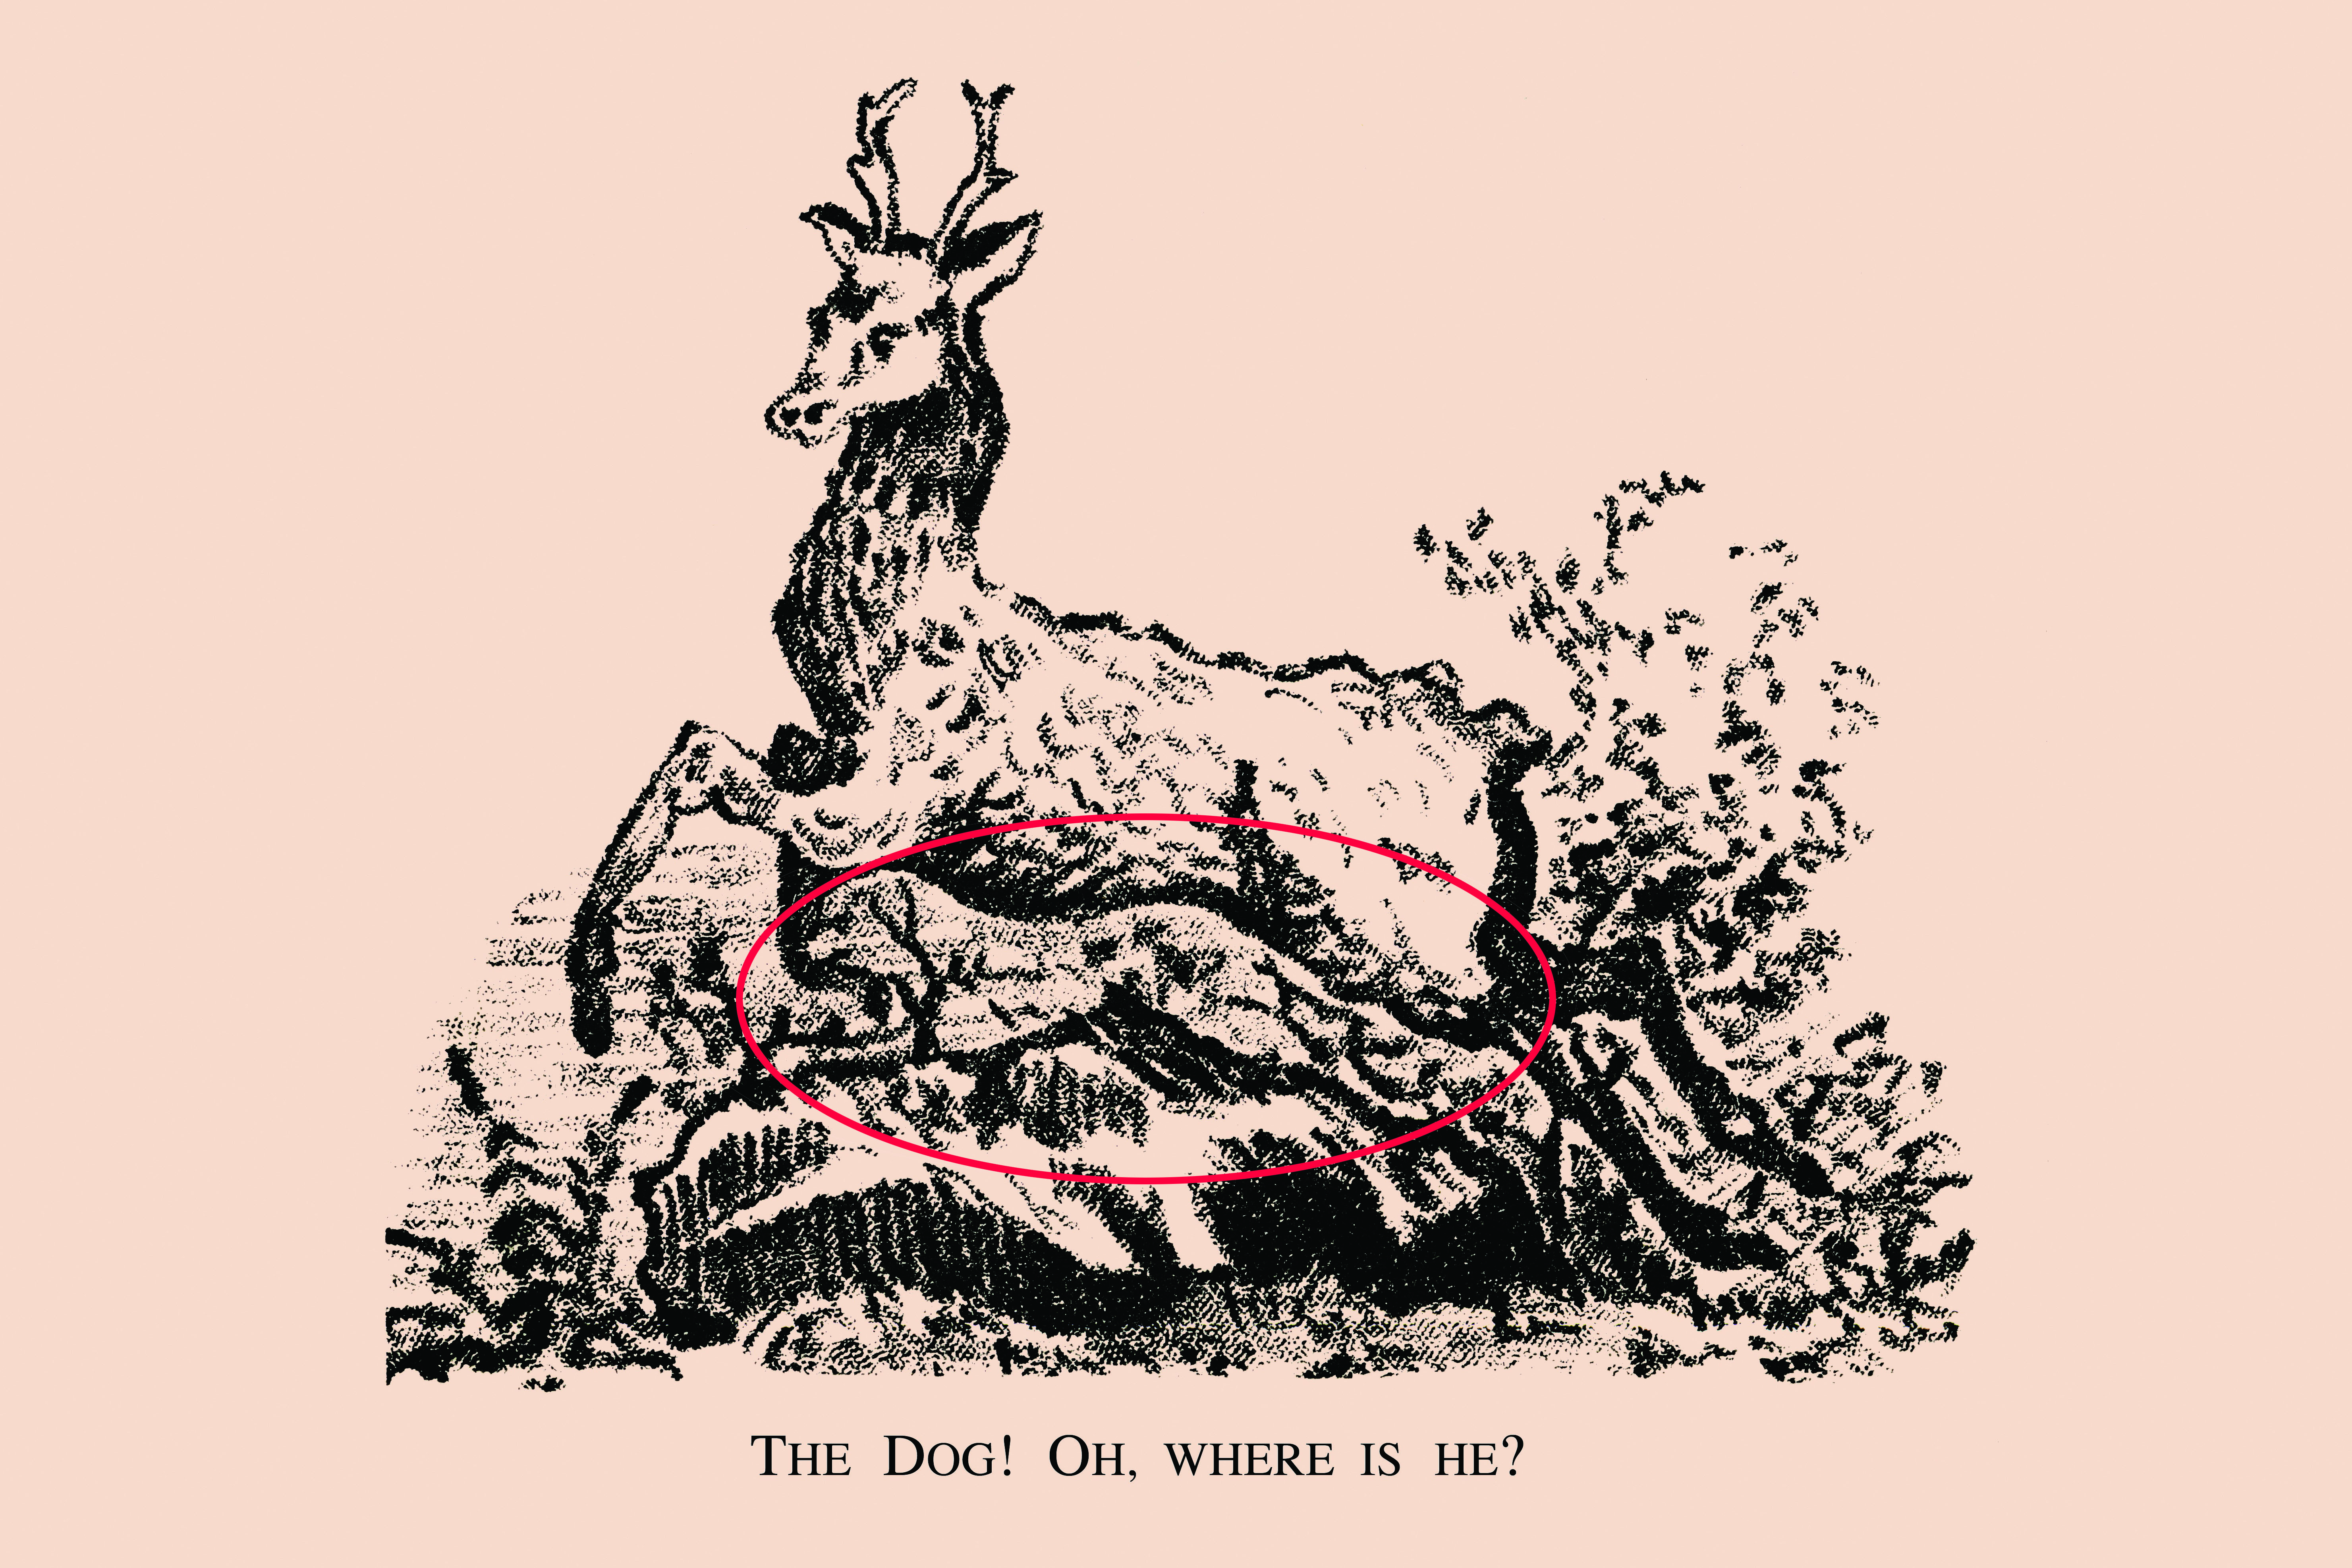 Der Hund ist unter dem Hirsch eingekreist